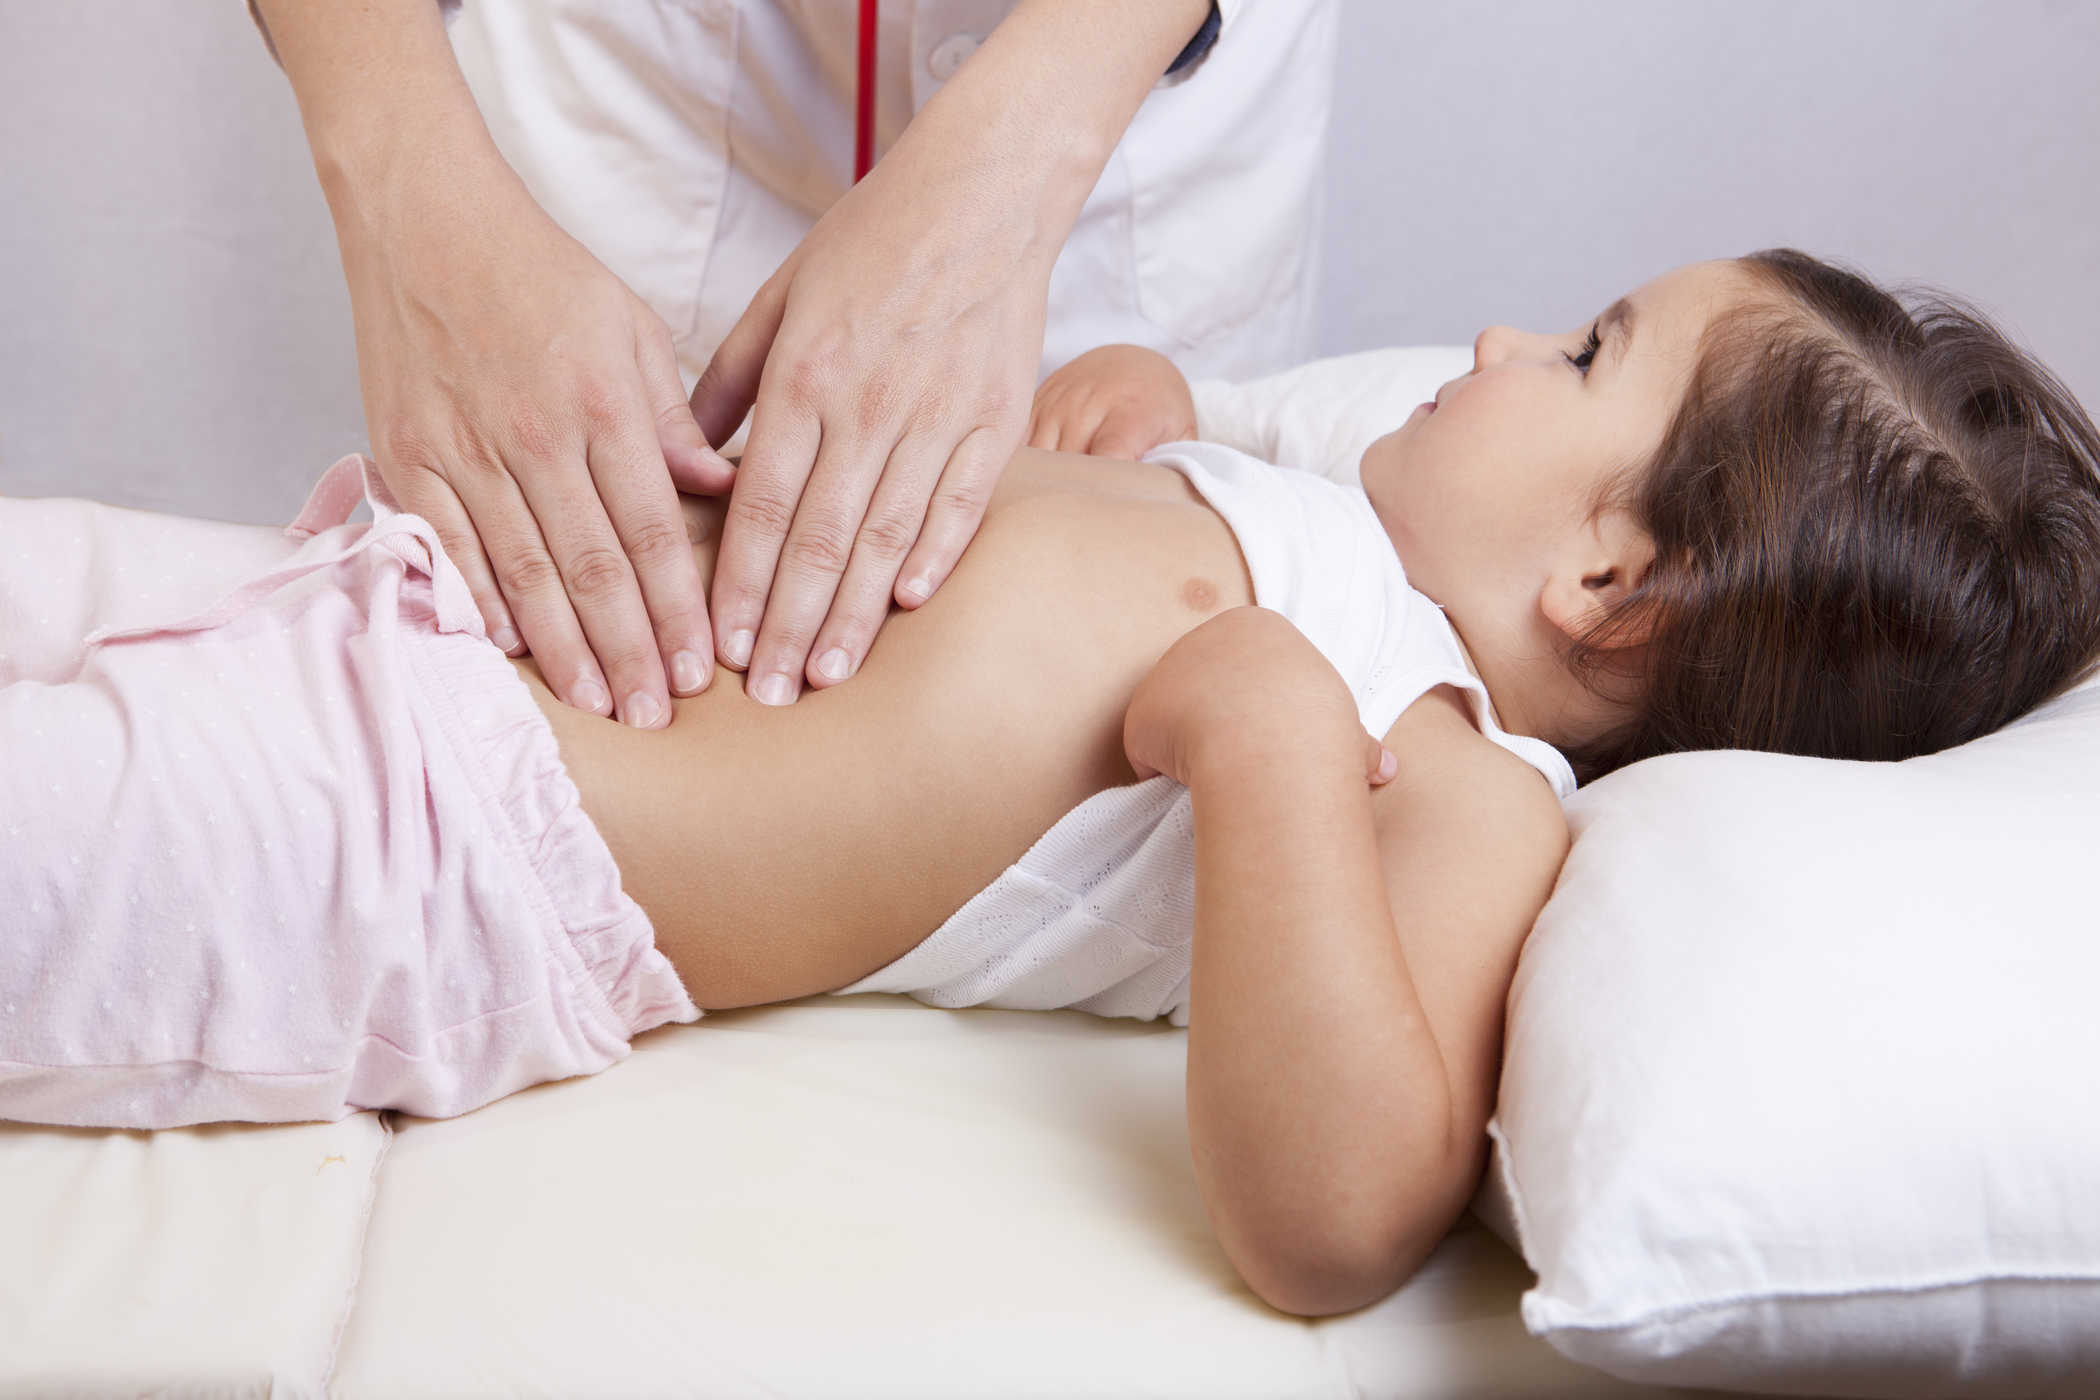 Để điều trị đau dạ dày ở trẻ nhỏ, tốt nhất cha mẹ nên đưa trẻ đến các cơ sở y tế